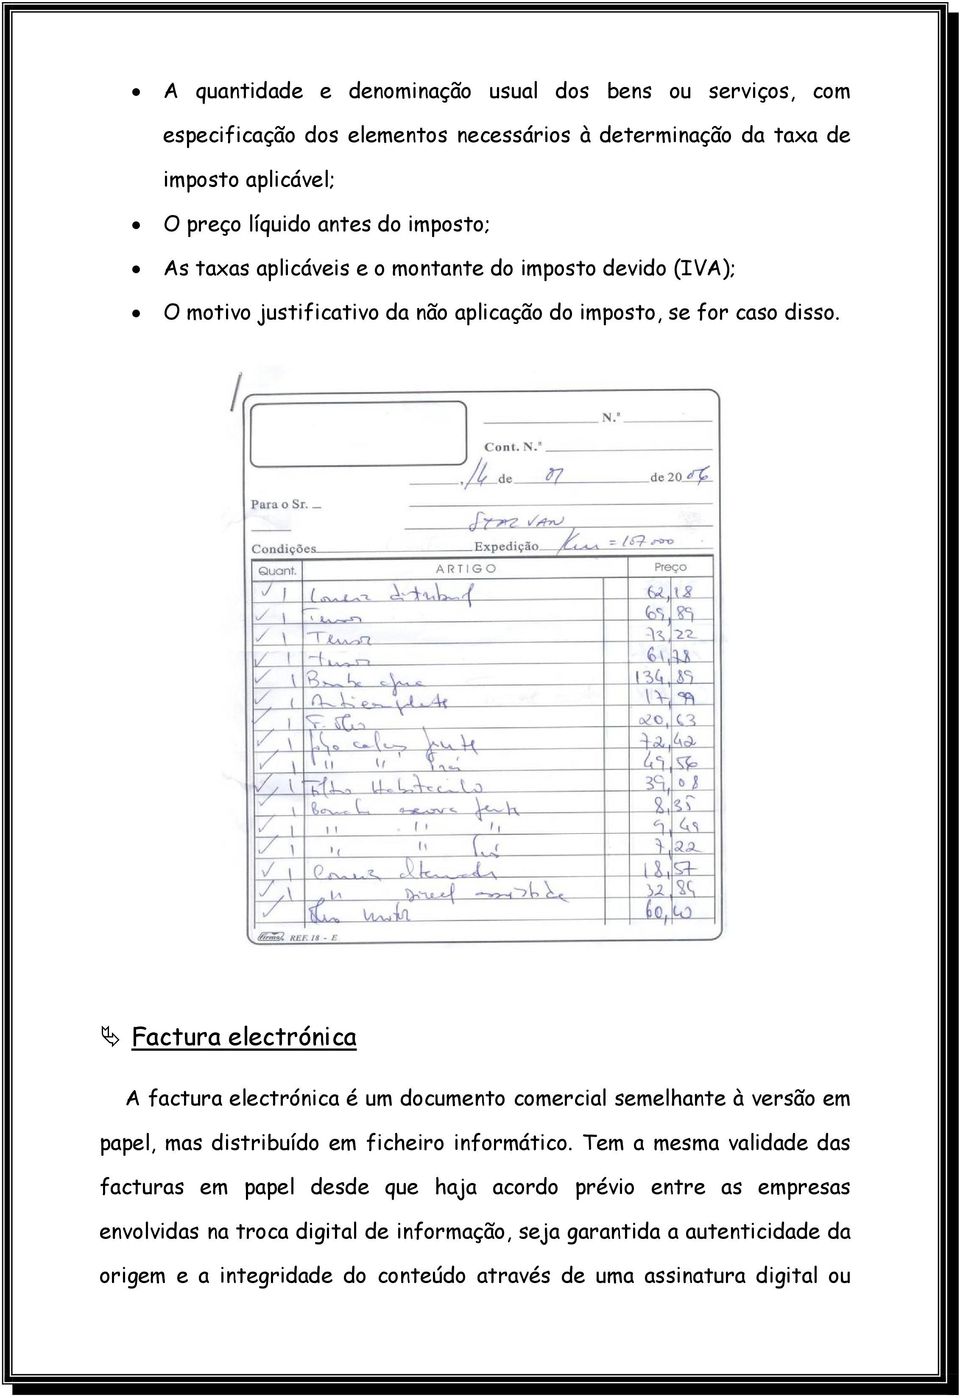 Ä Factura electrónica A factura electrónica é um documento comercial semelhante à versão em papel, mas distribuído em ficheiro informático.